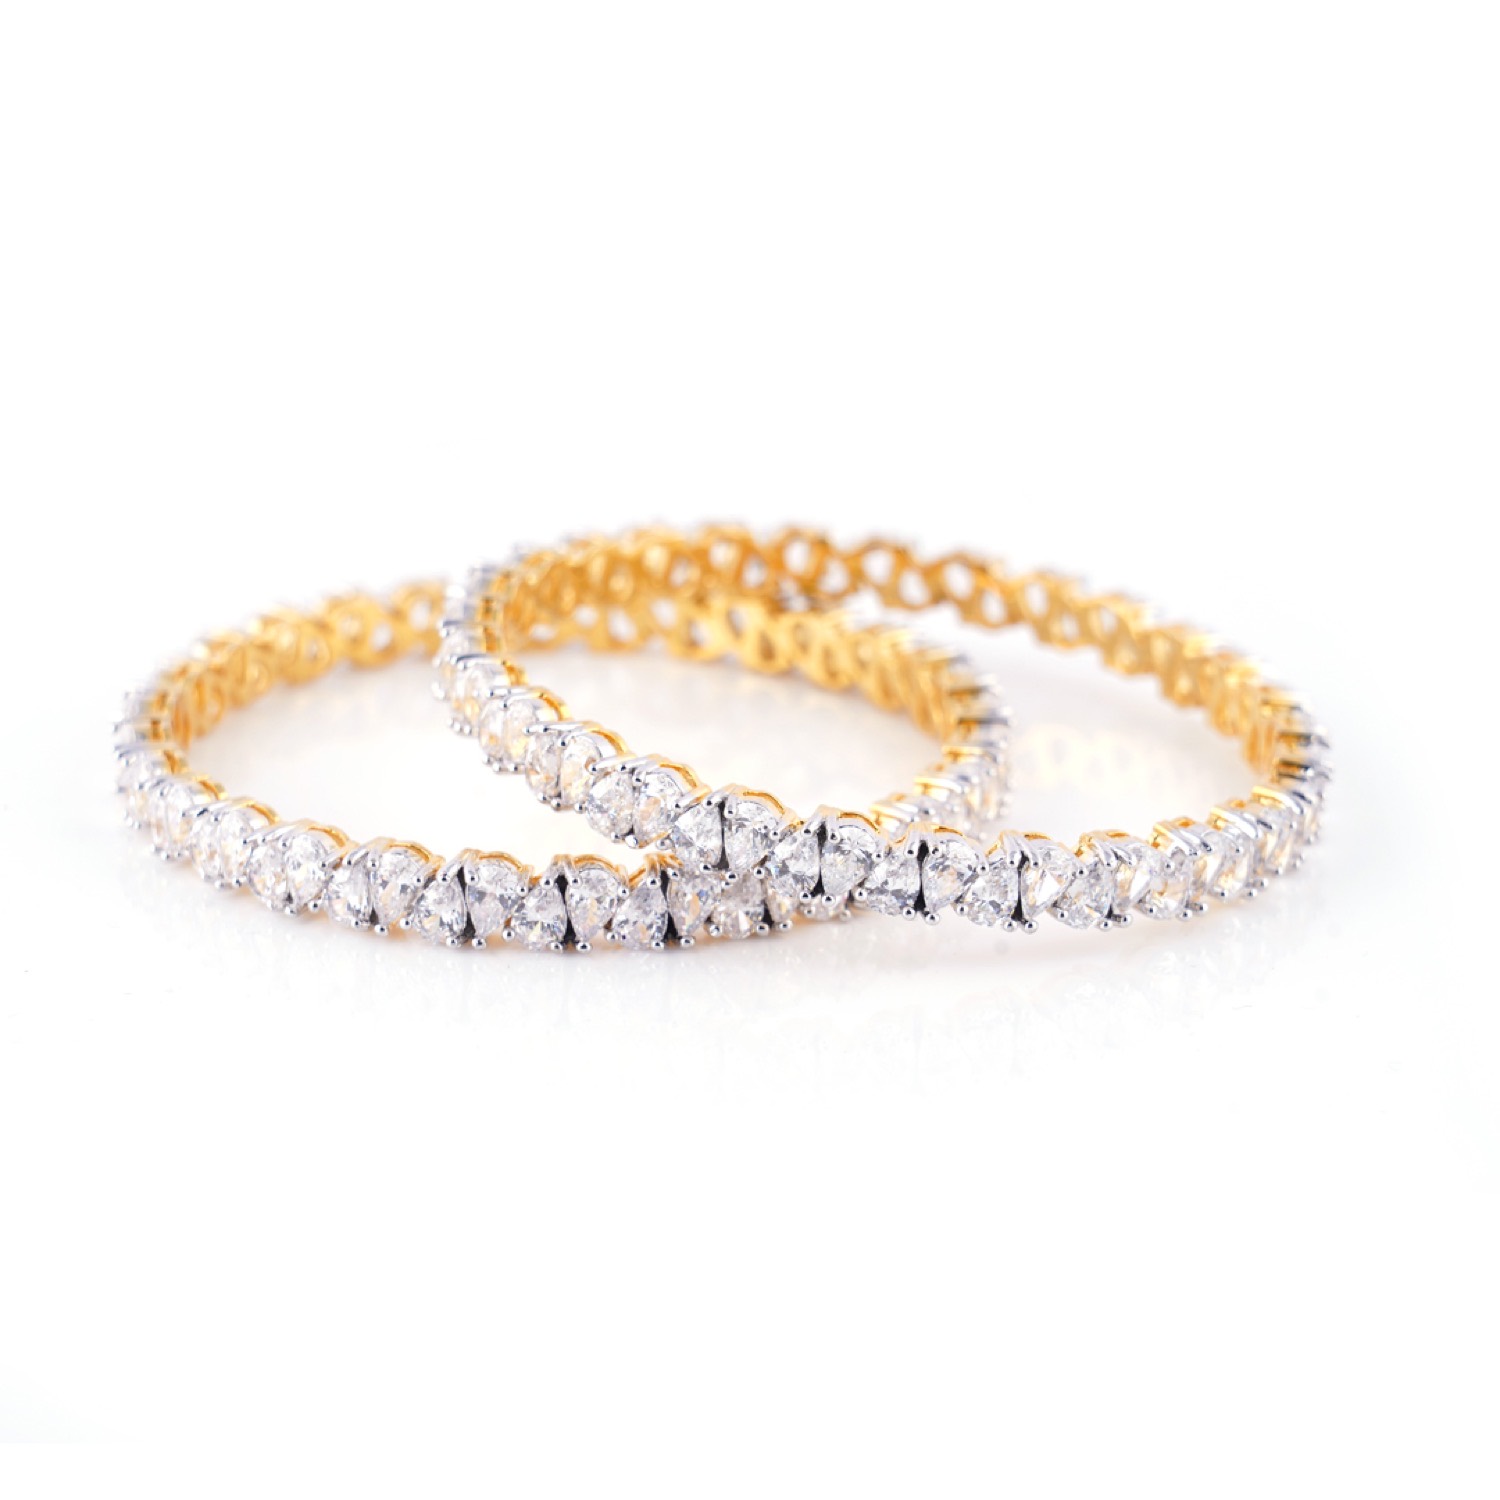 varam_bracelet_and_bangle_pear_shaped_white_stone_set_of_two_gold_coated_silver_bangle-1